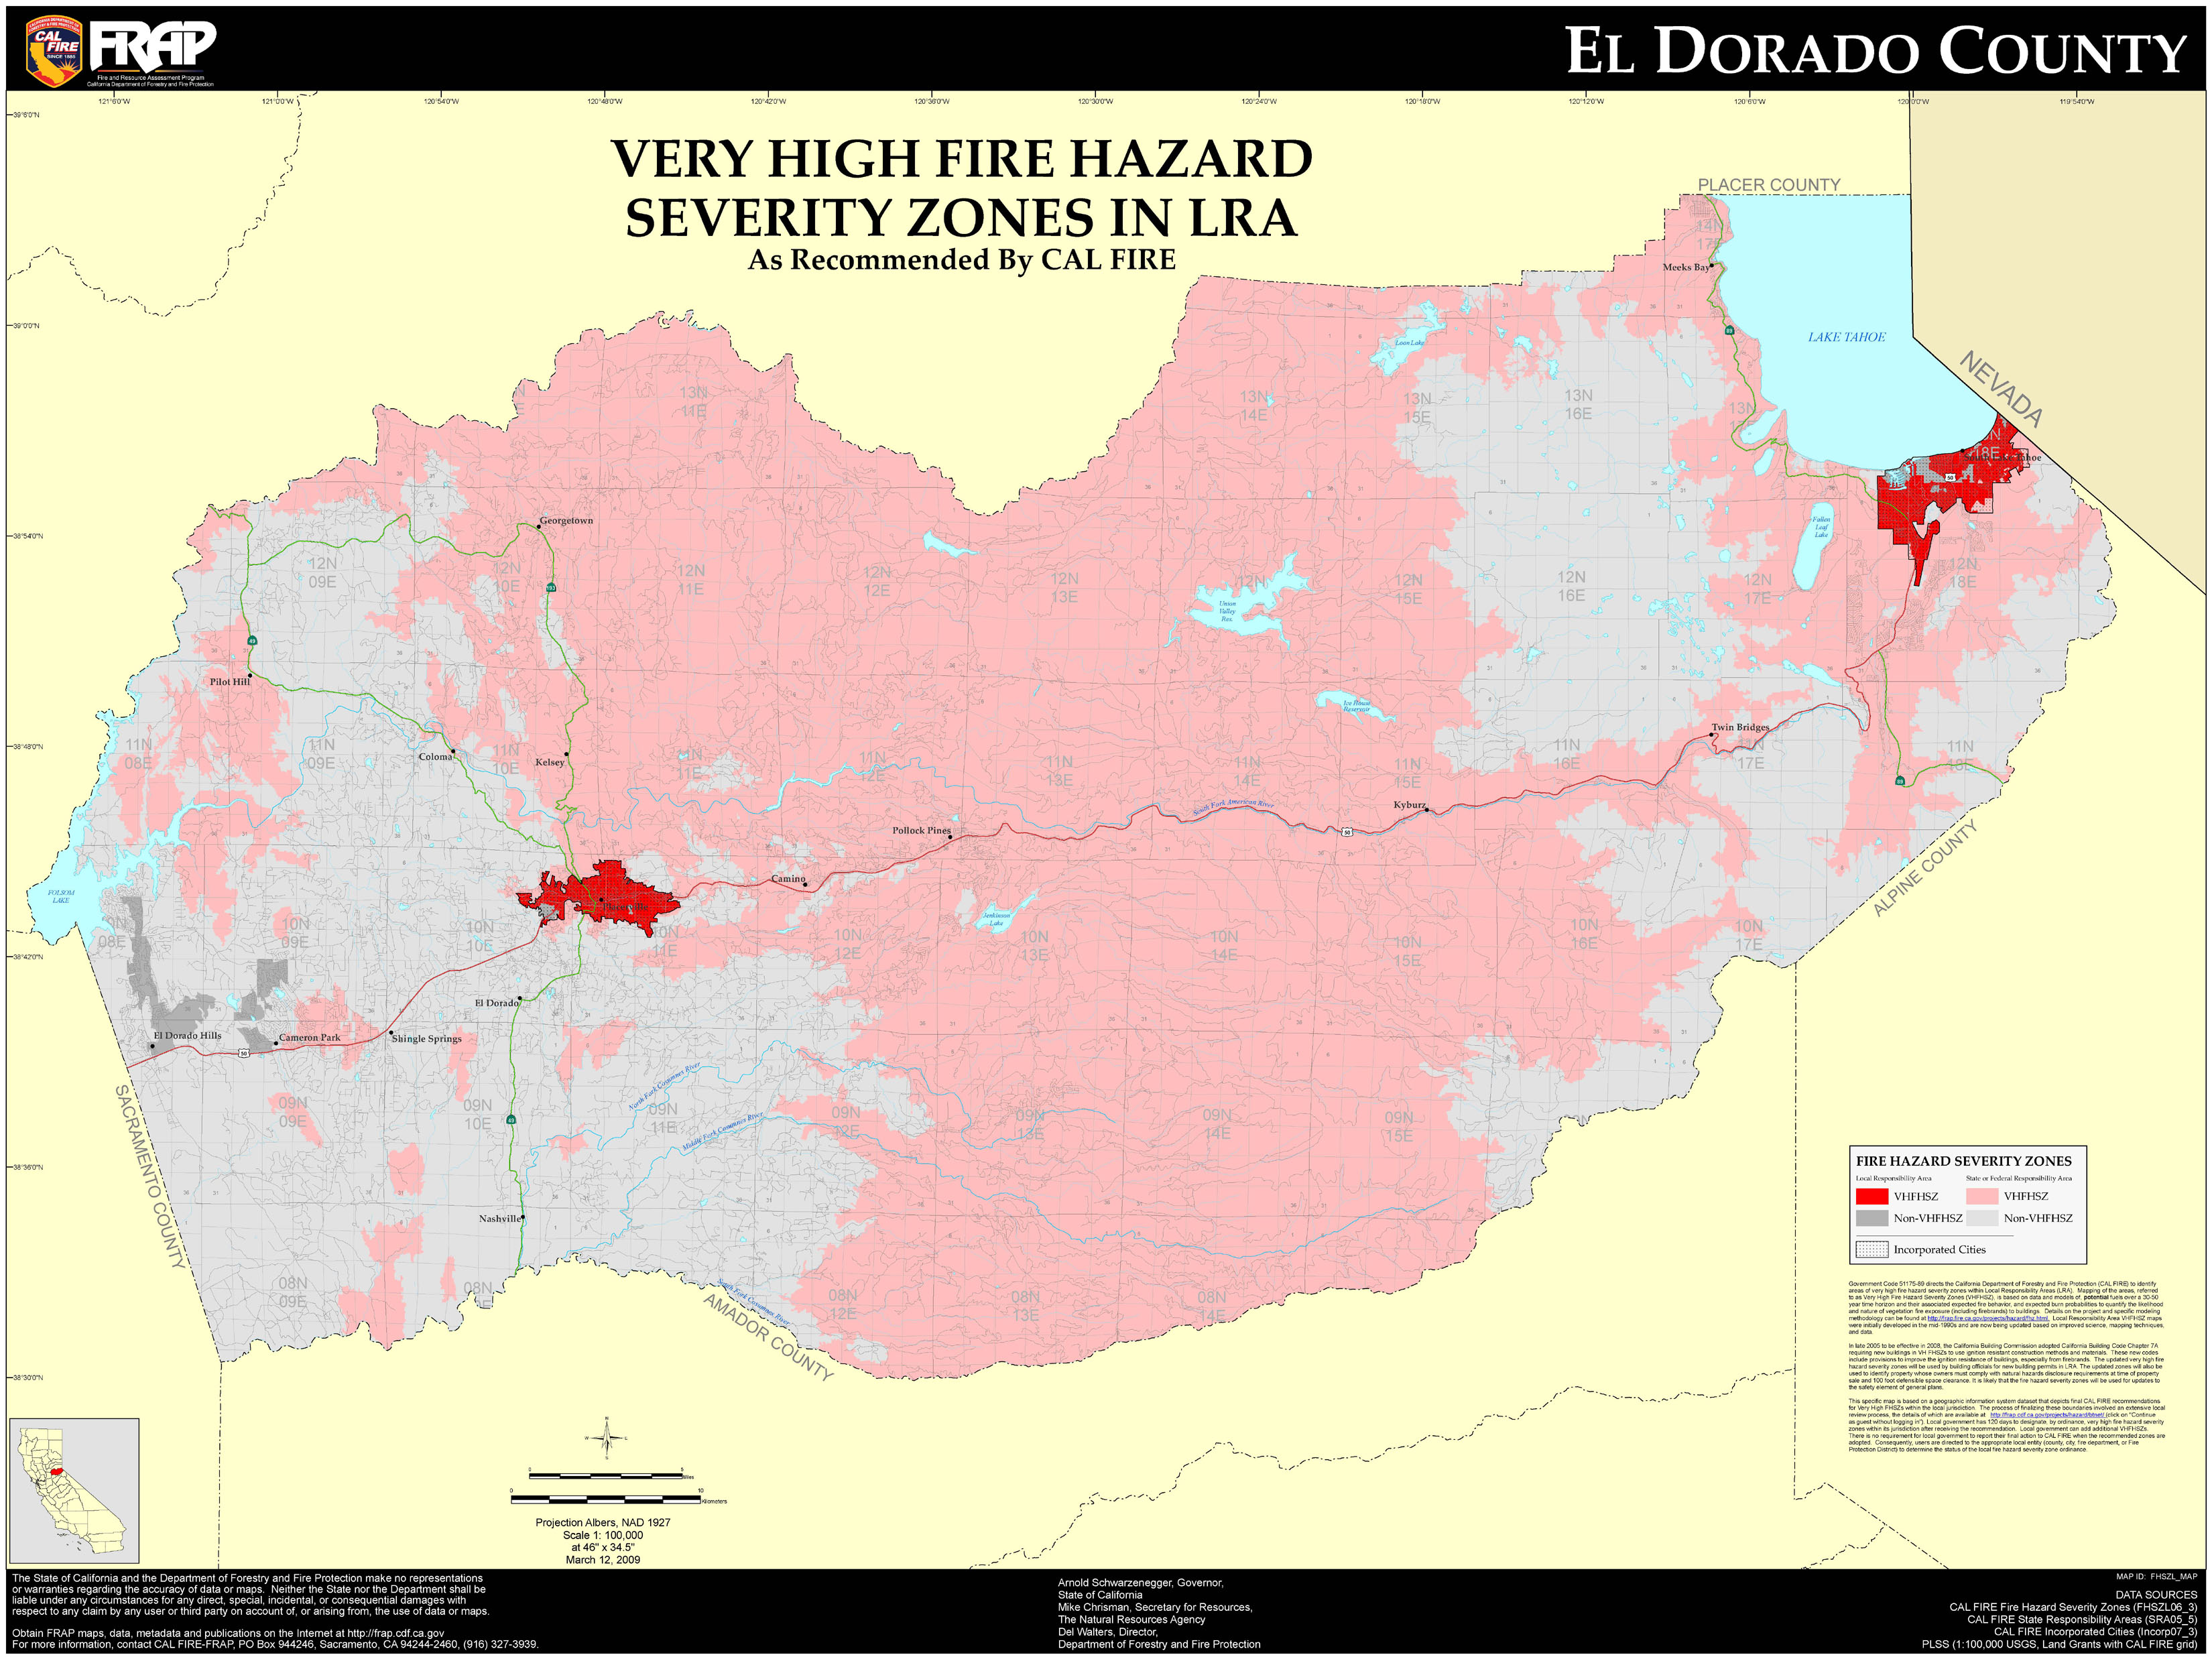 El Dorado County Very High Fire Hazard Severity Zones in LRA3300 x 2475